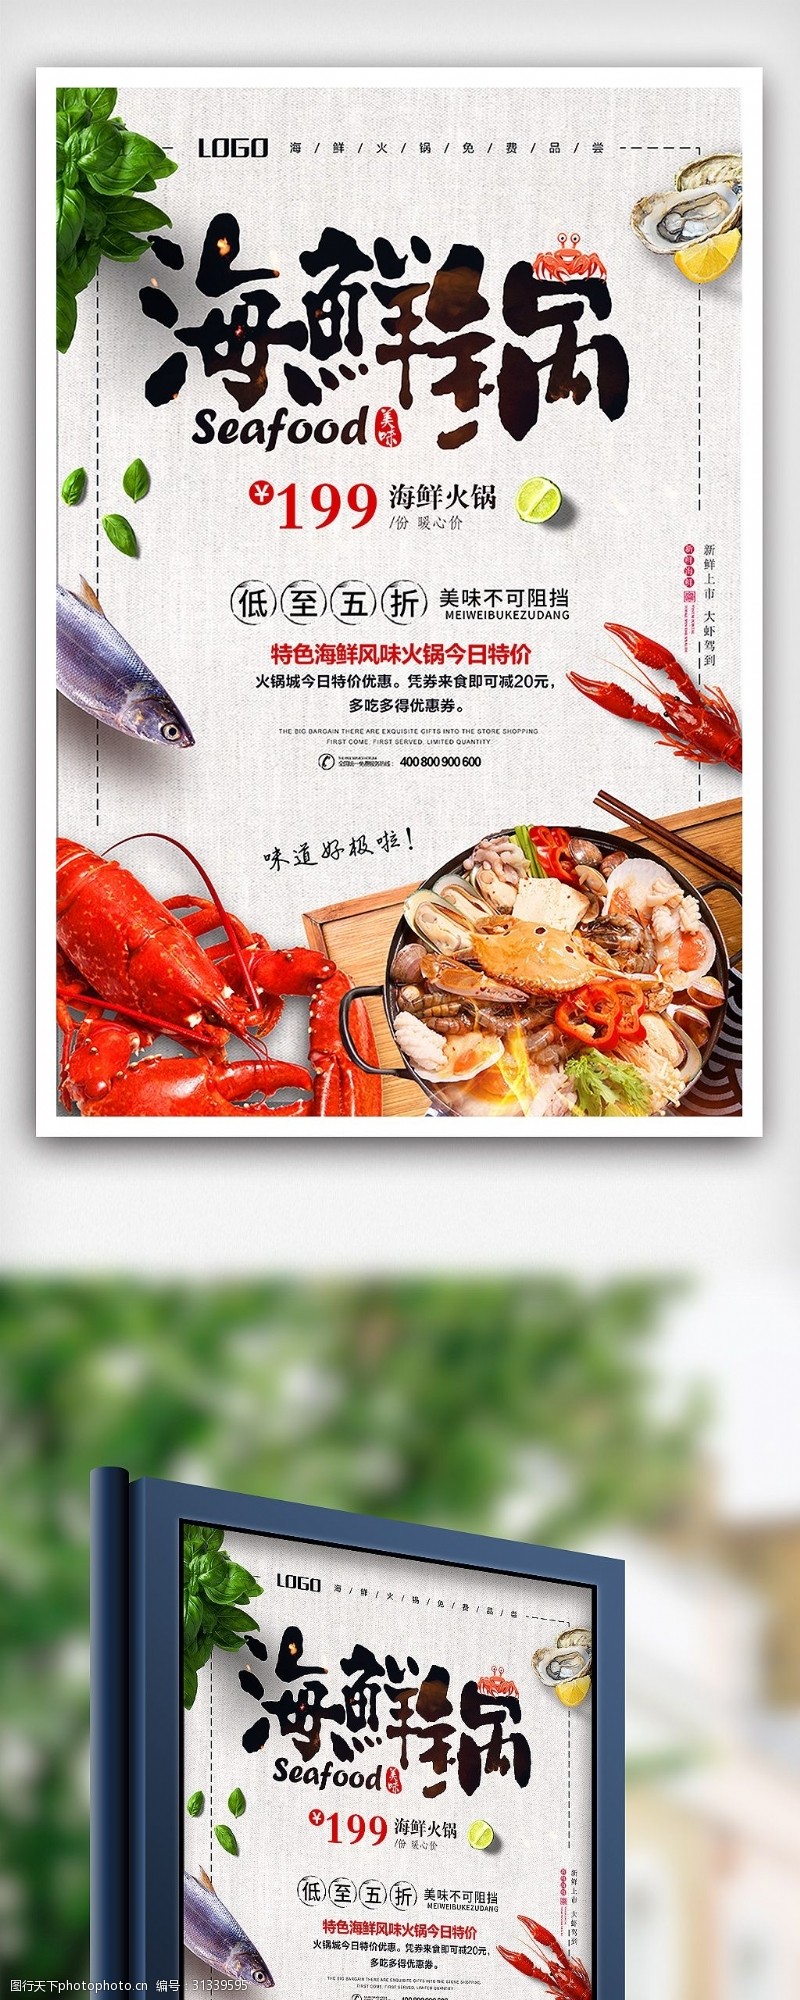 特价图片免费下载海鲜火锅特价促销餐饮海报设计